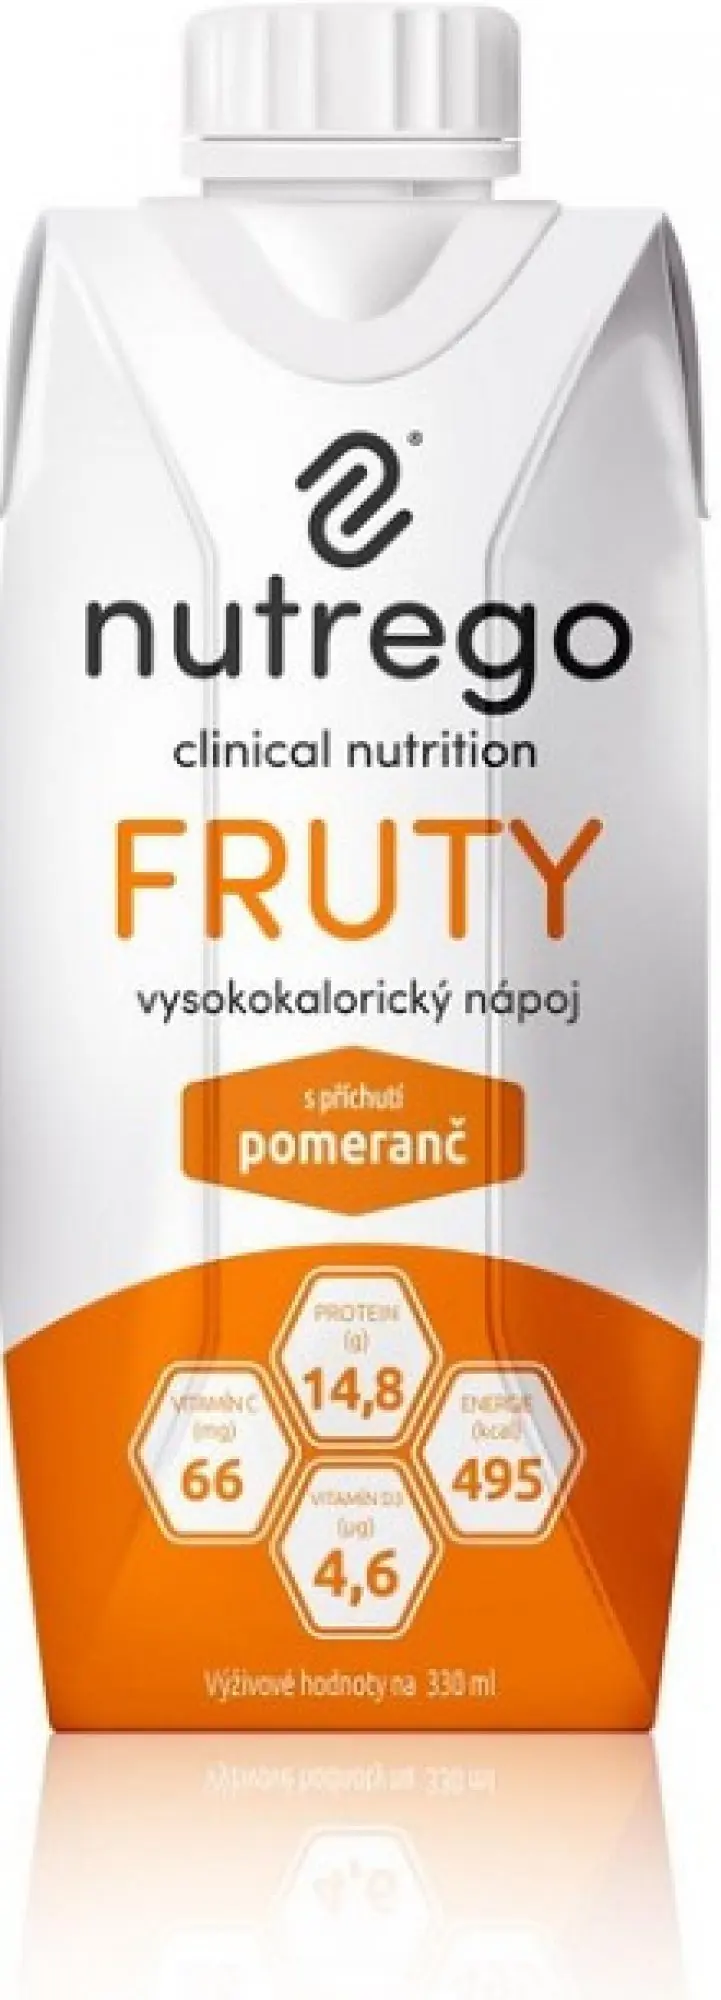 Nutrego Fruty s příchutí pomeranč por.sol.12 x 330 ml